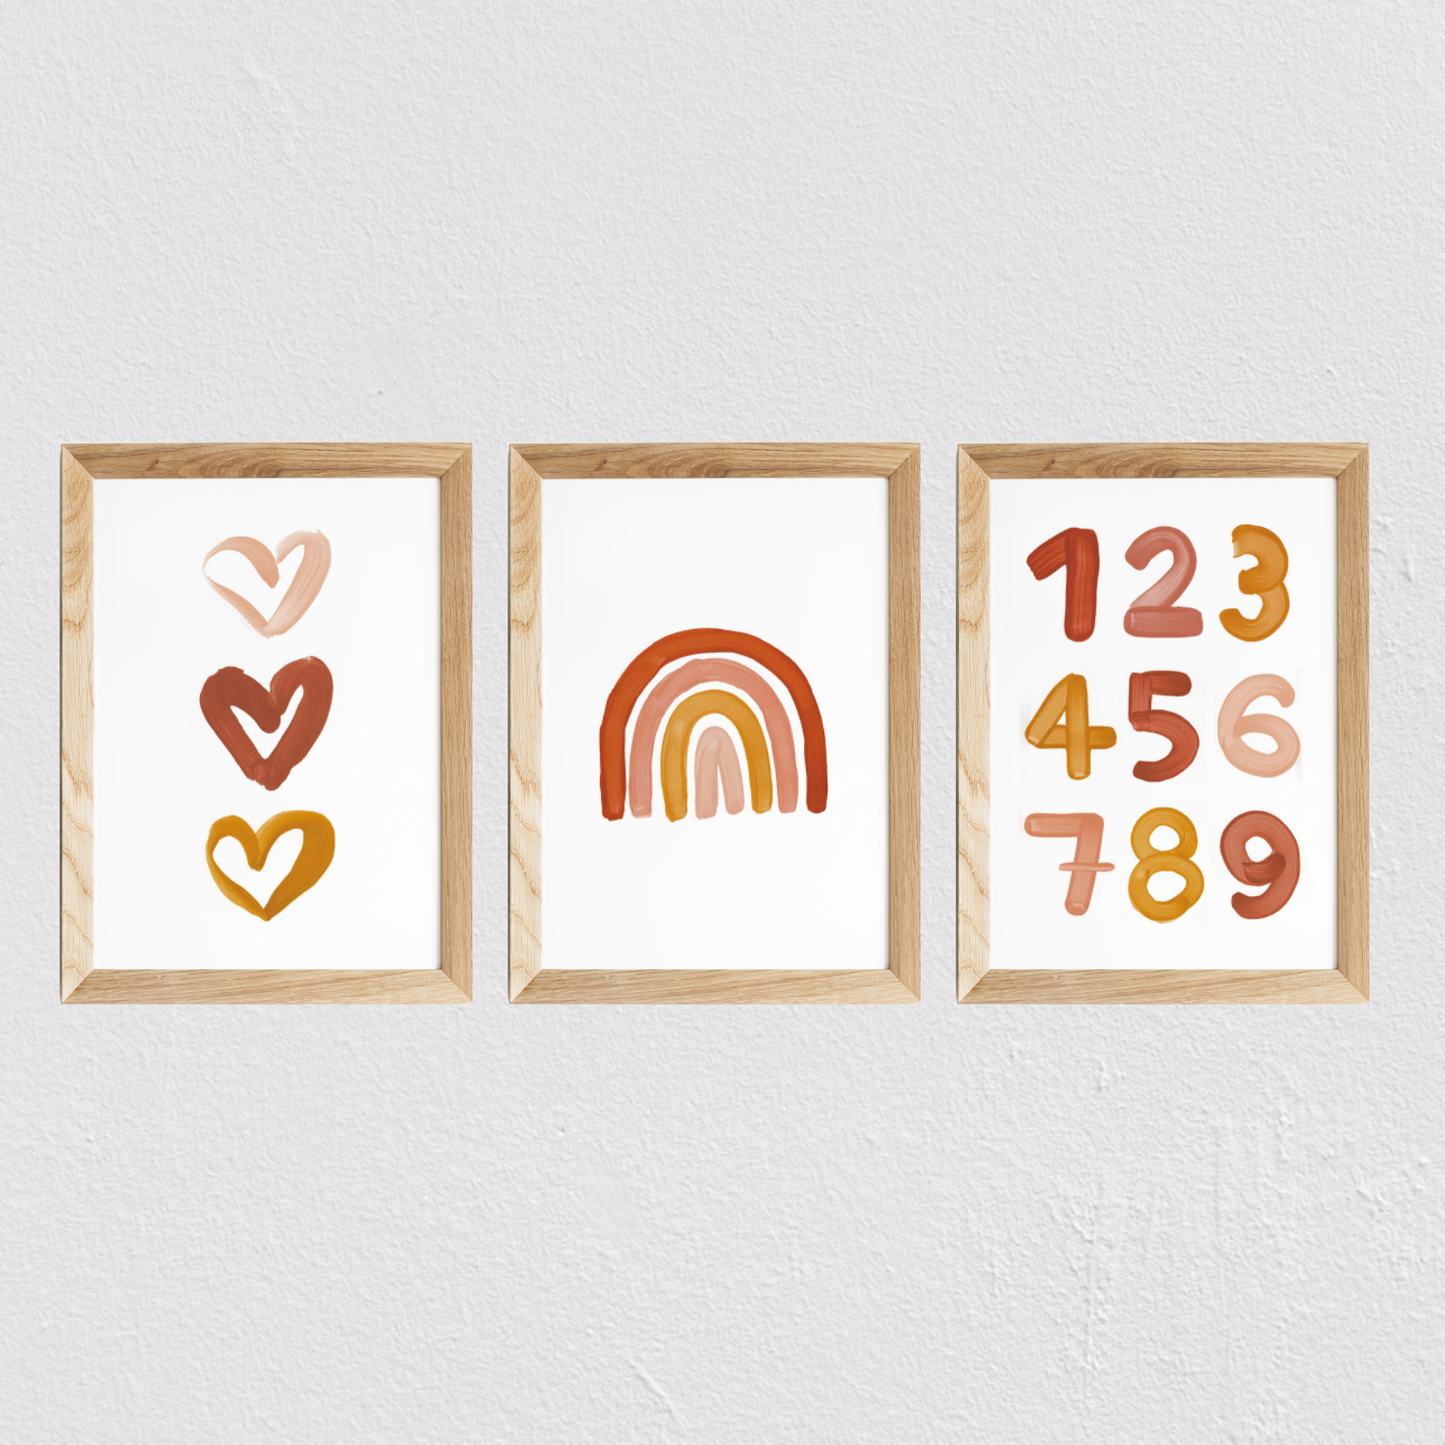 Poster chambre bébé / enfant ‘arc-en-ciel’ brique, moutarde et rose - SEVEN PAPER